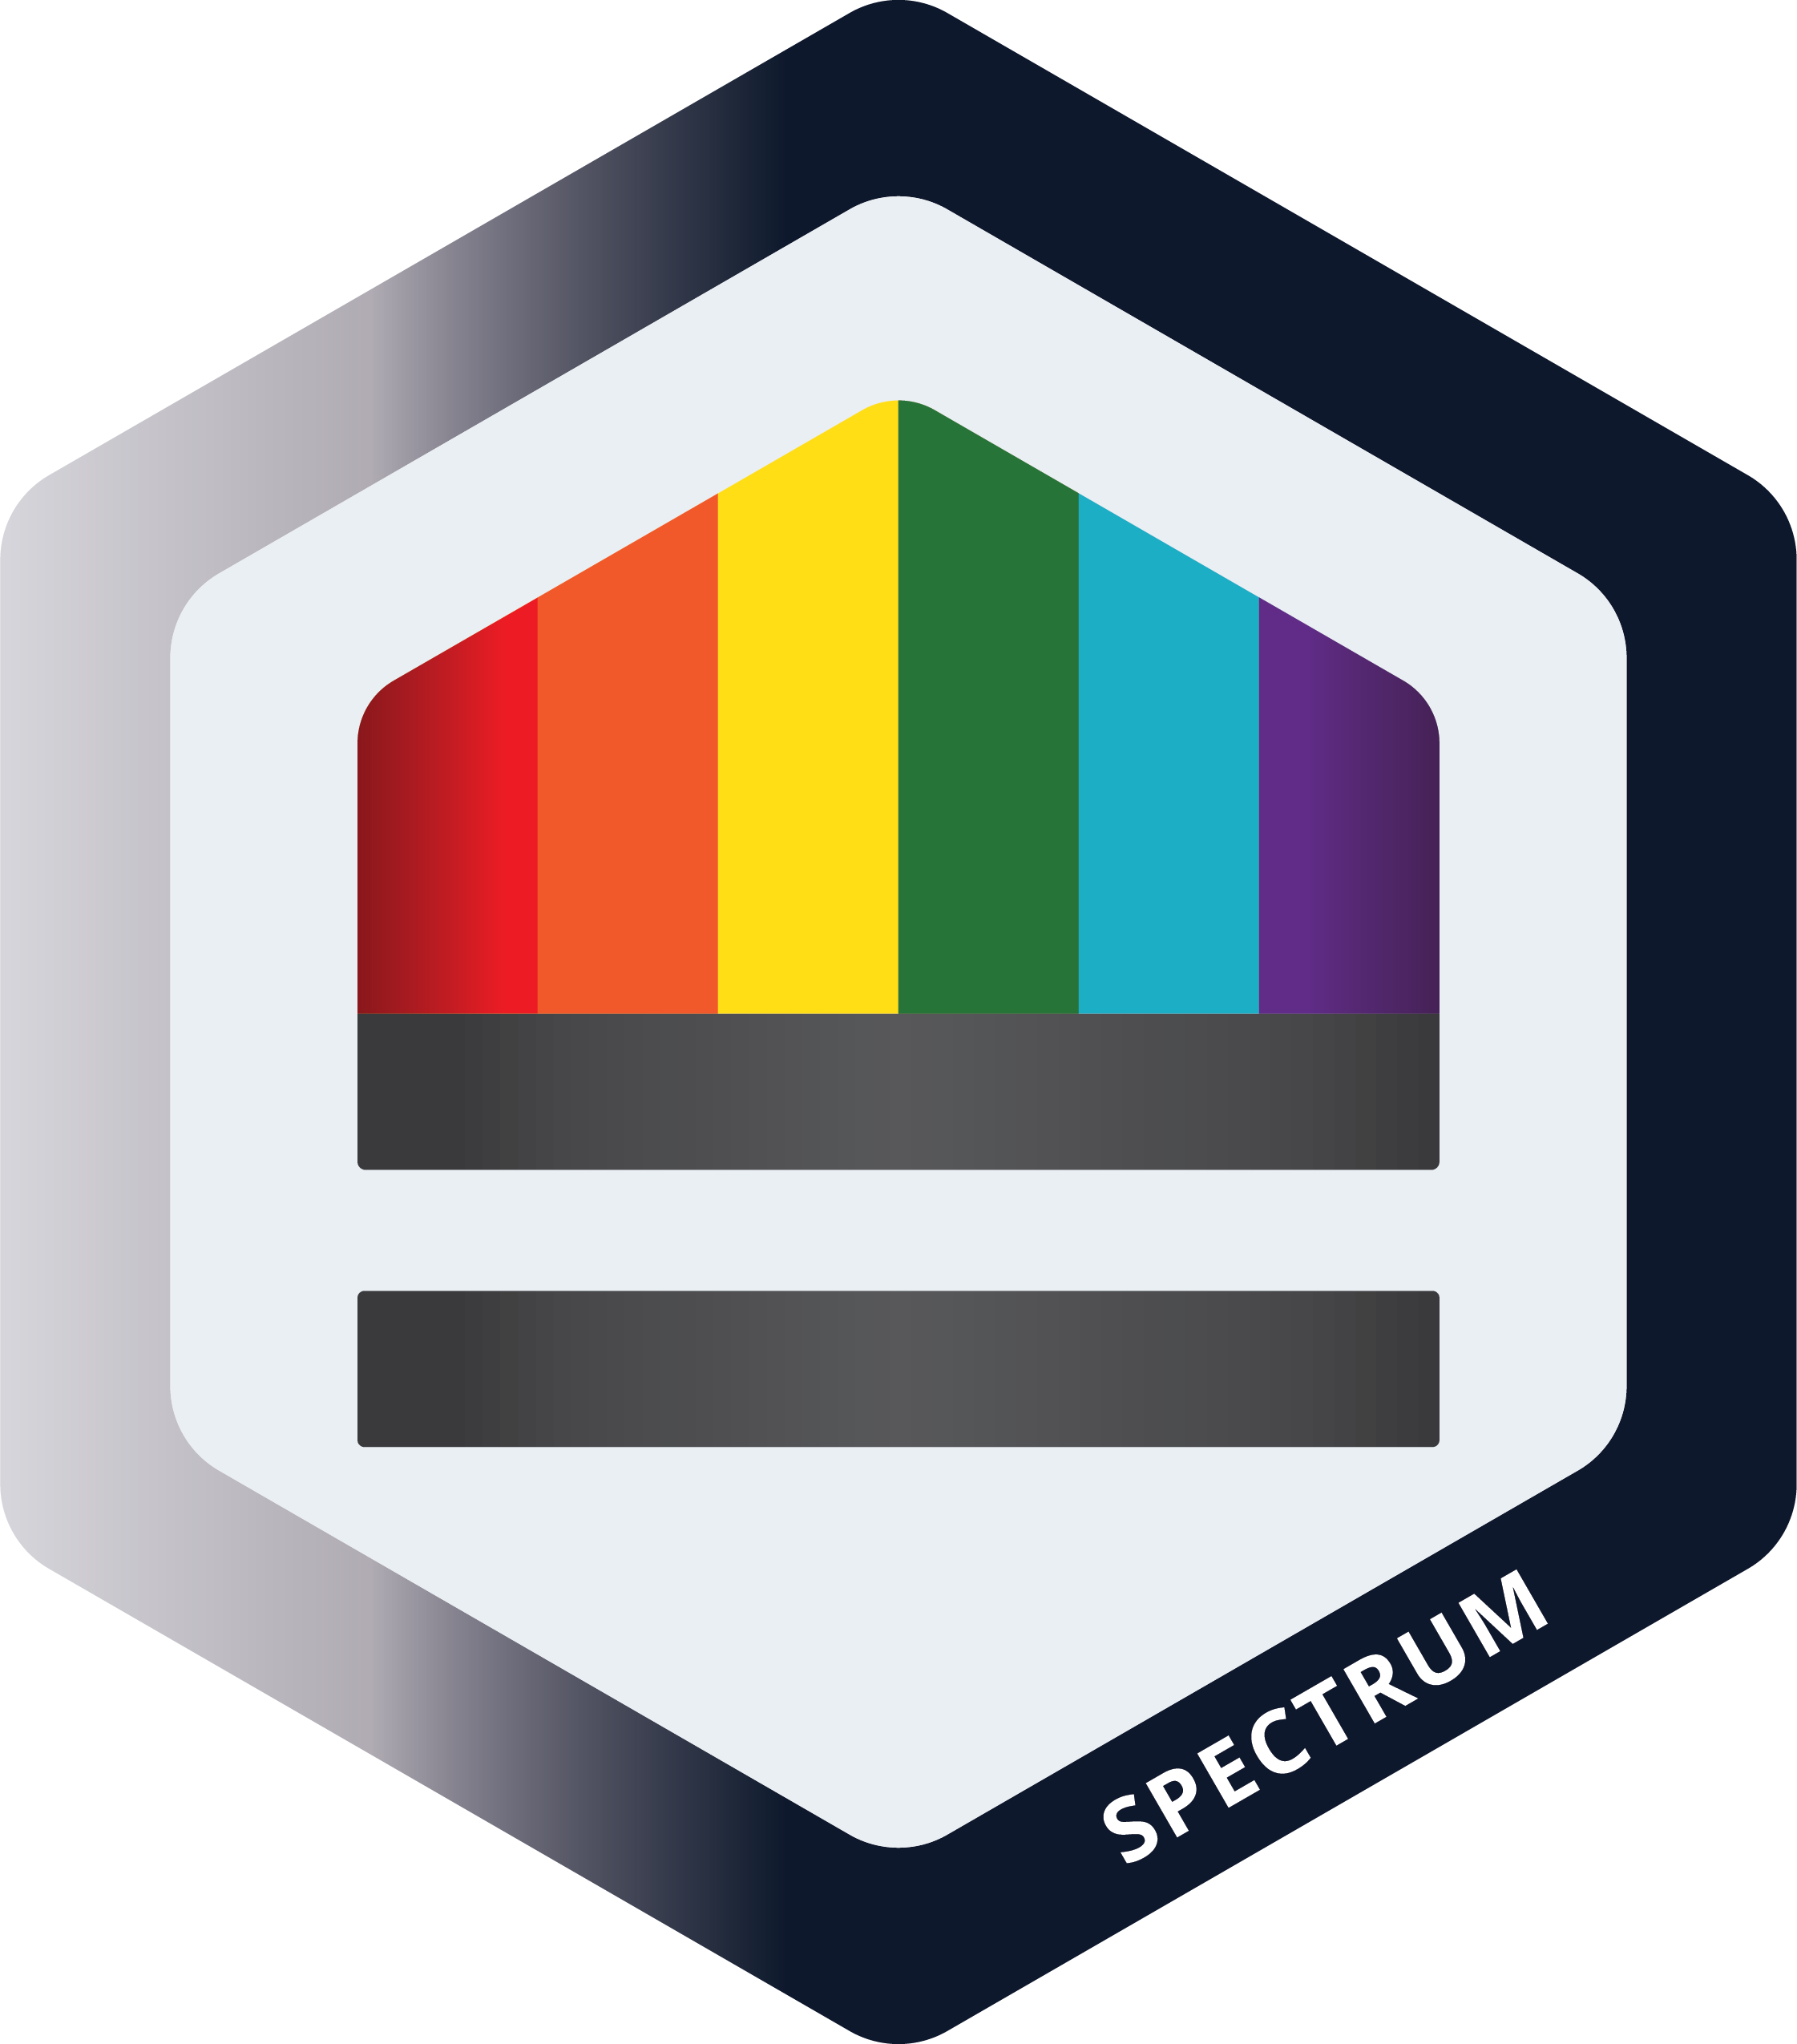 Spectrum LLC